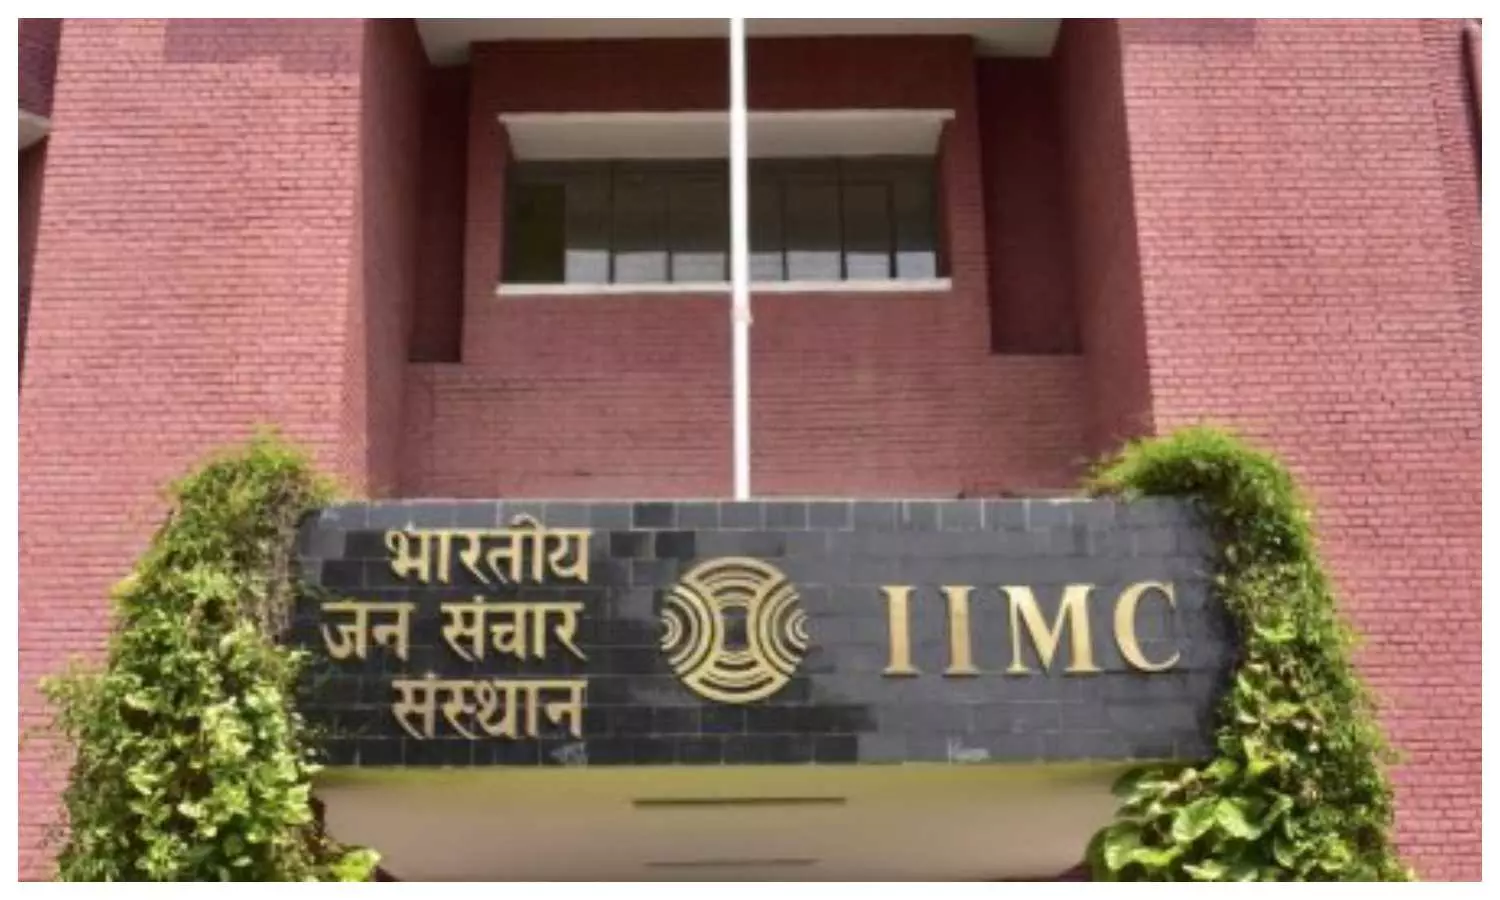 IIMC News